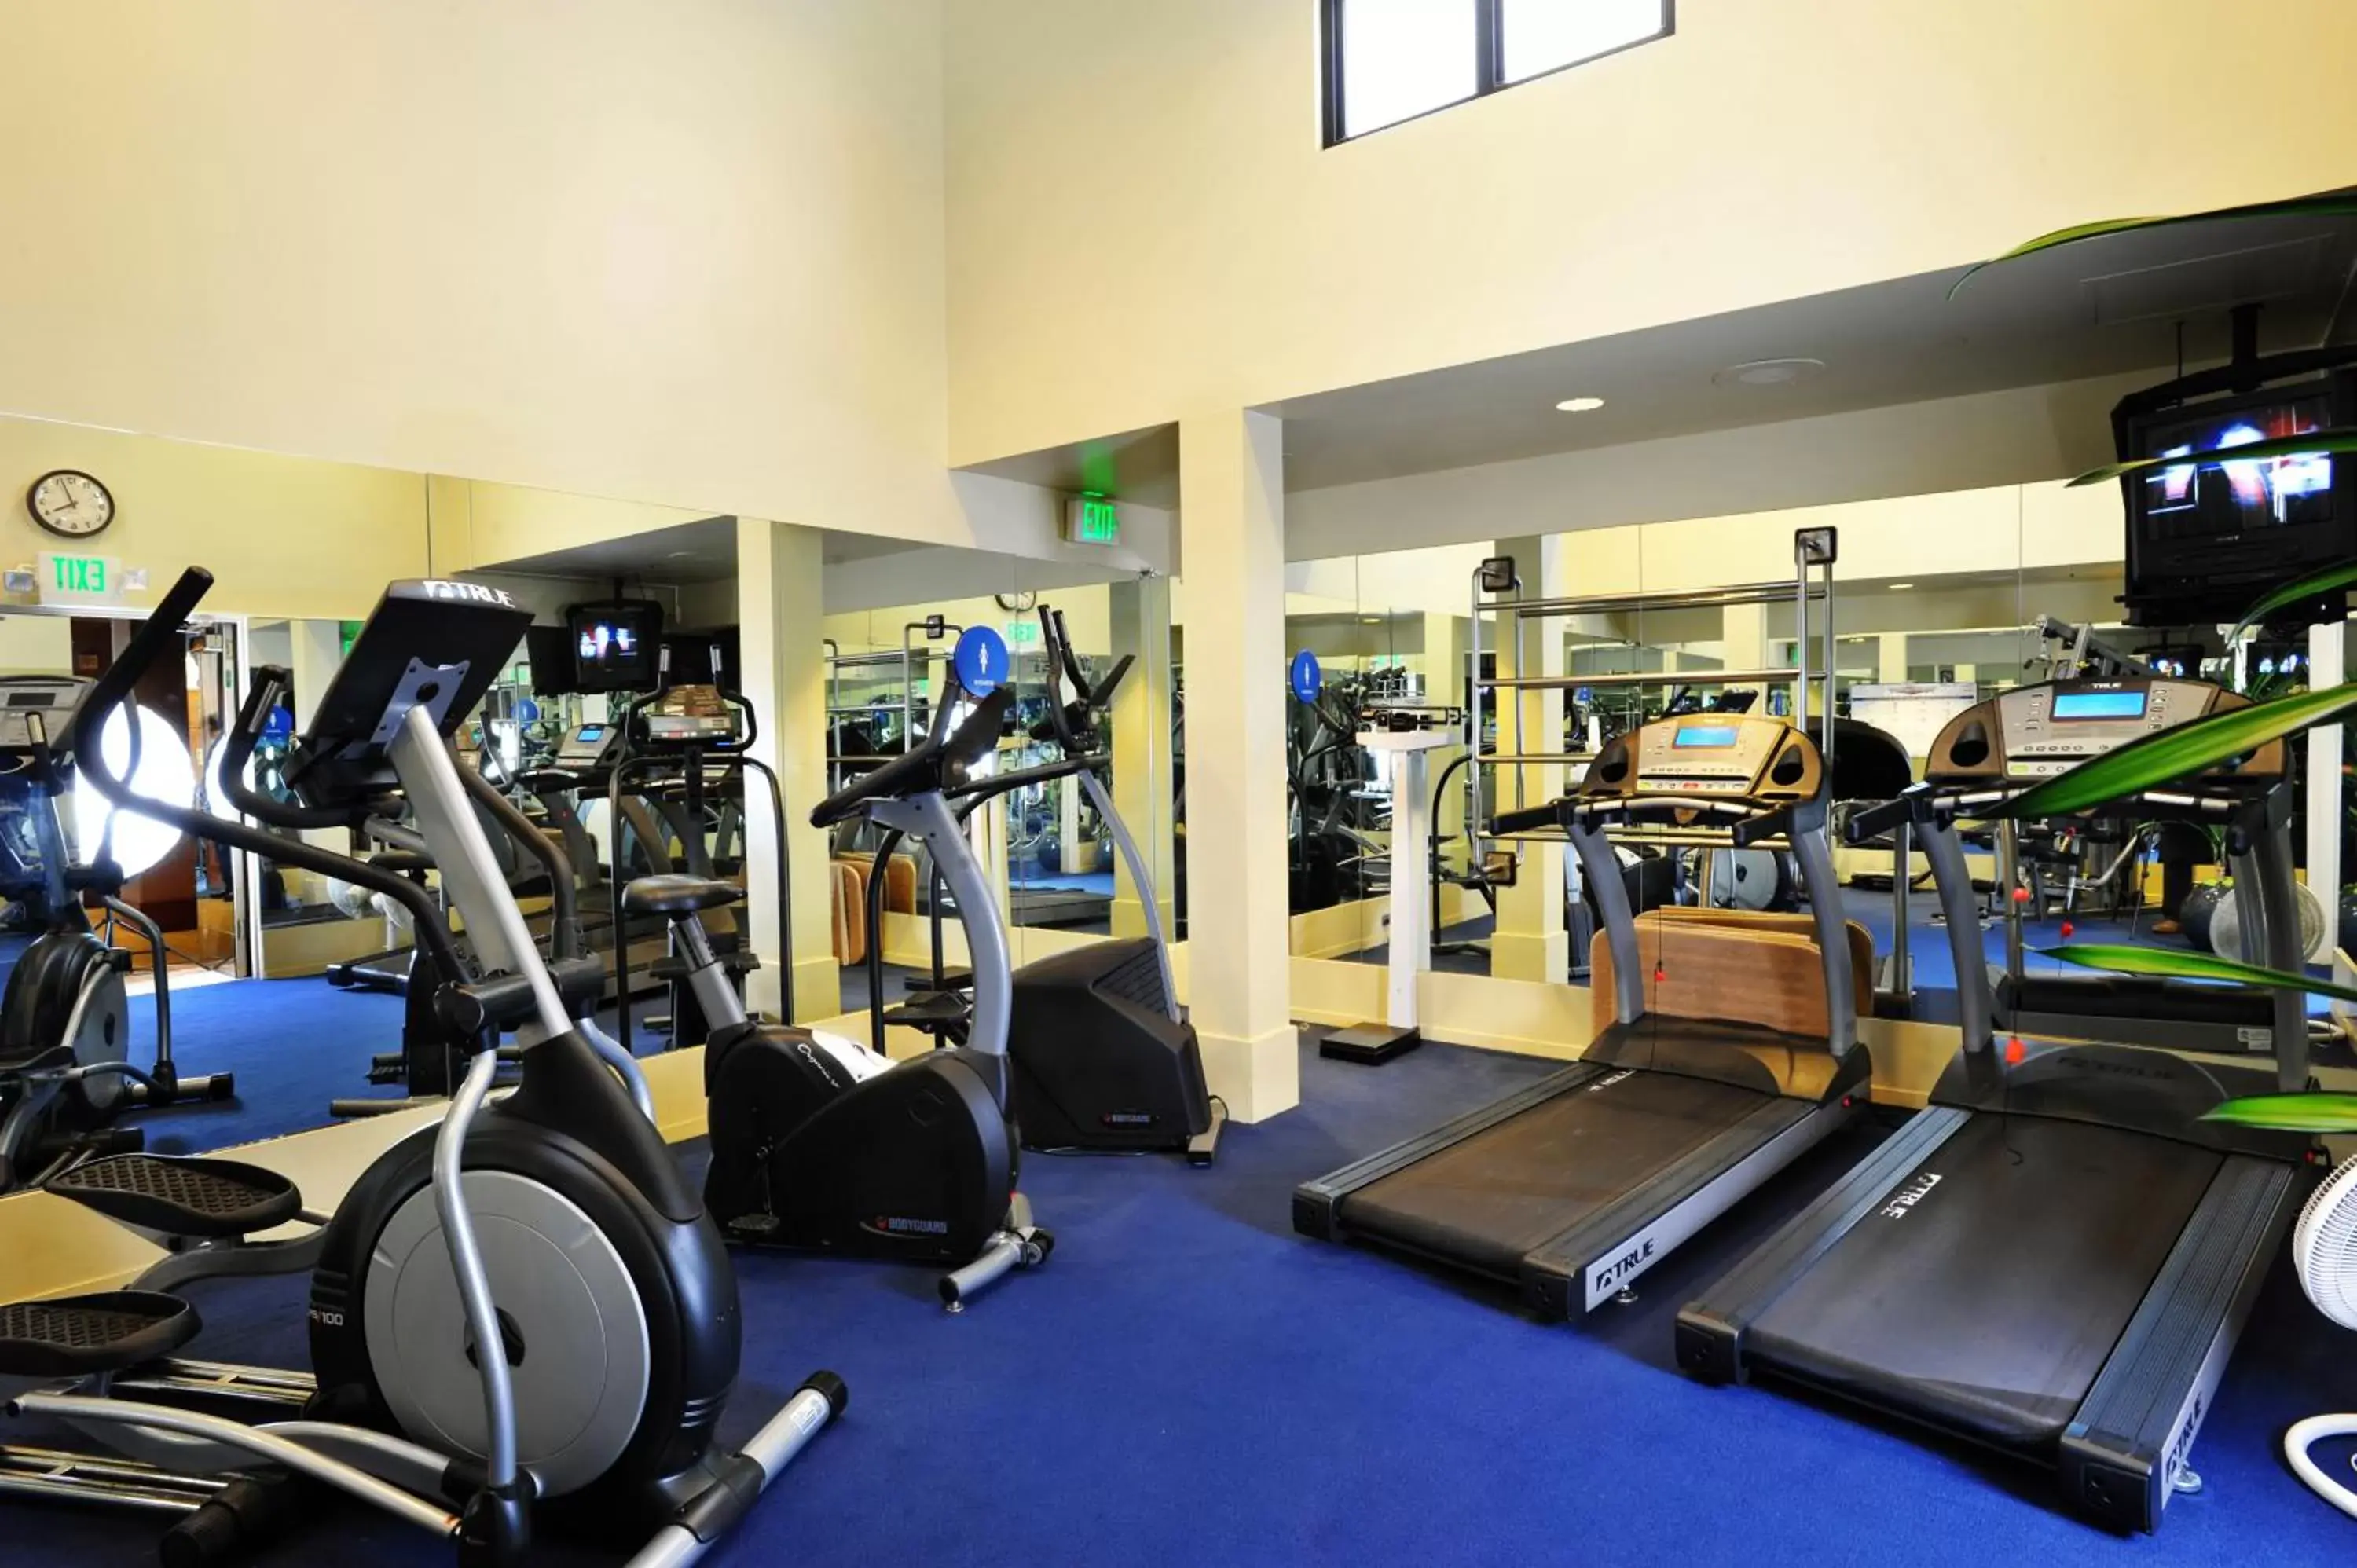 Fitness centre/facilities, Fitness Center/Facilities in Club Donatello